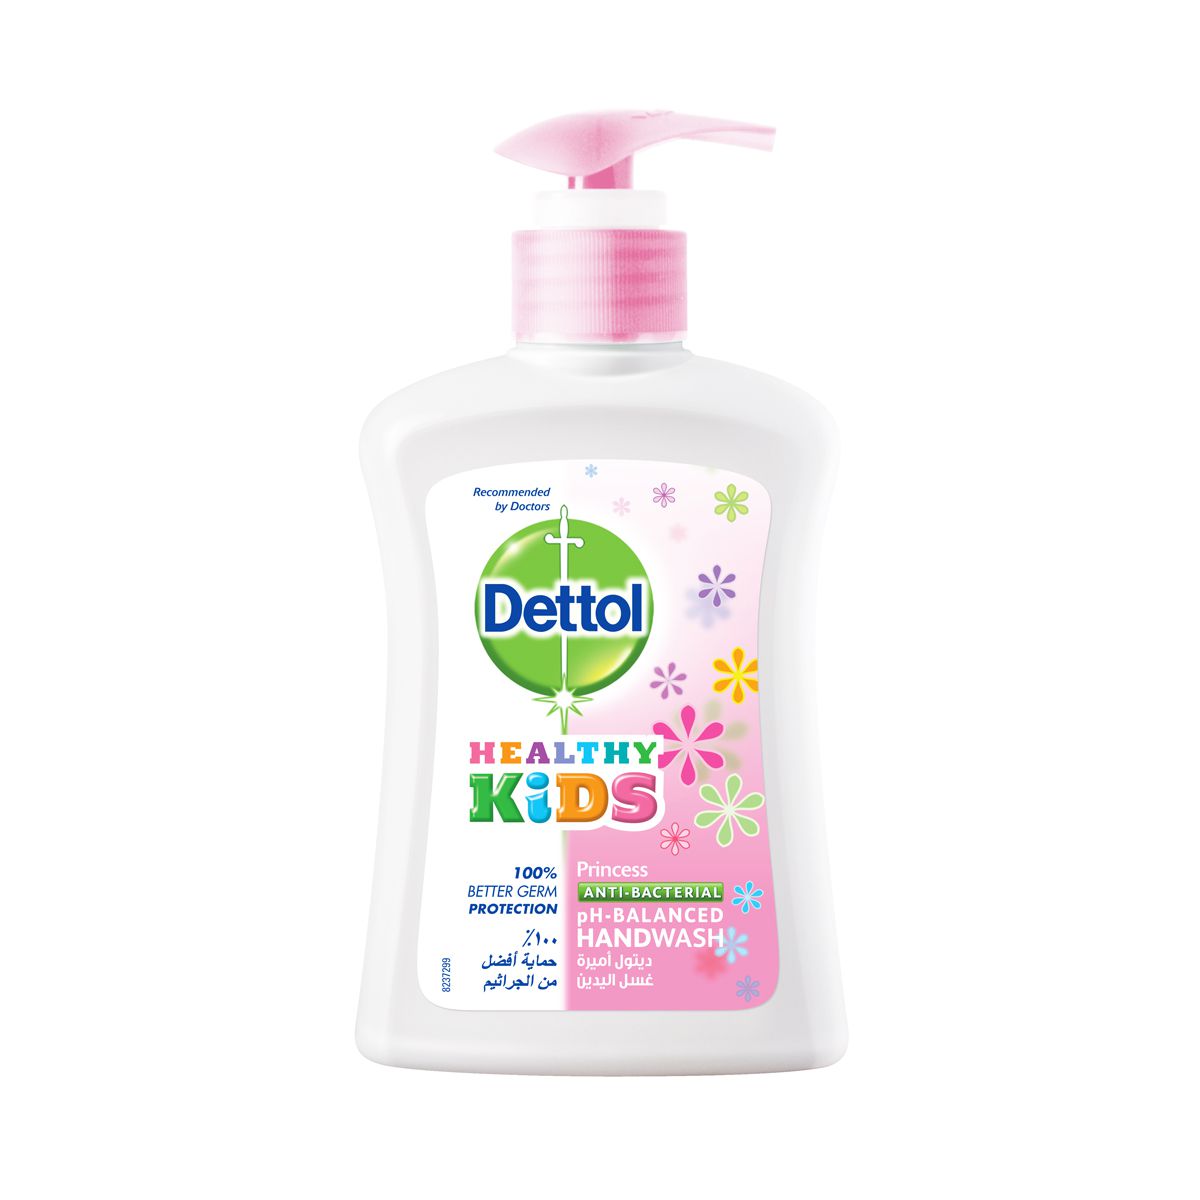 Dettol Healthy Kids Liquid Hand Wash Soap Princess | Dettol